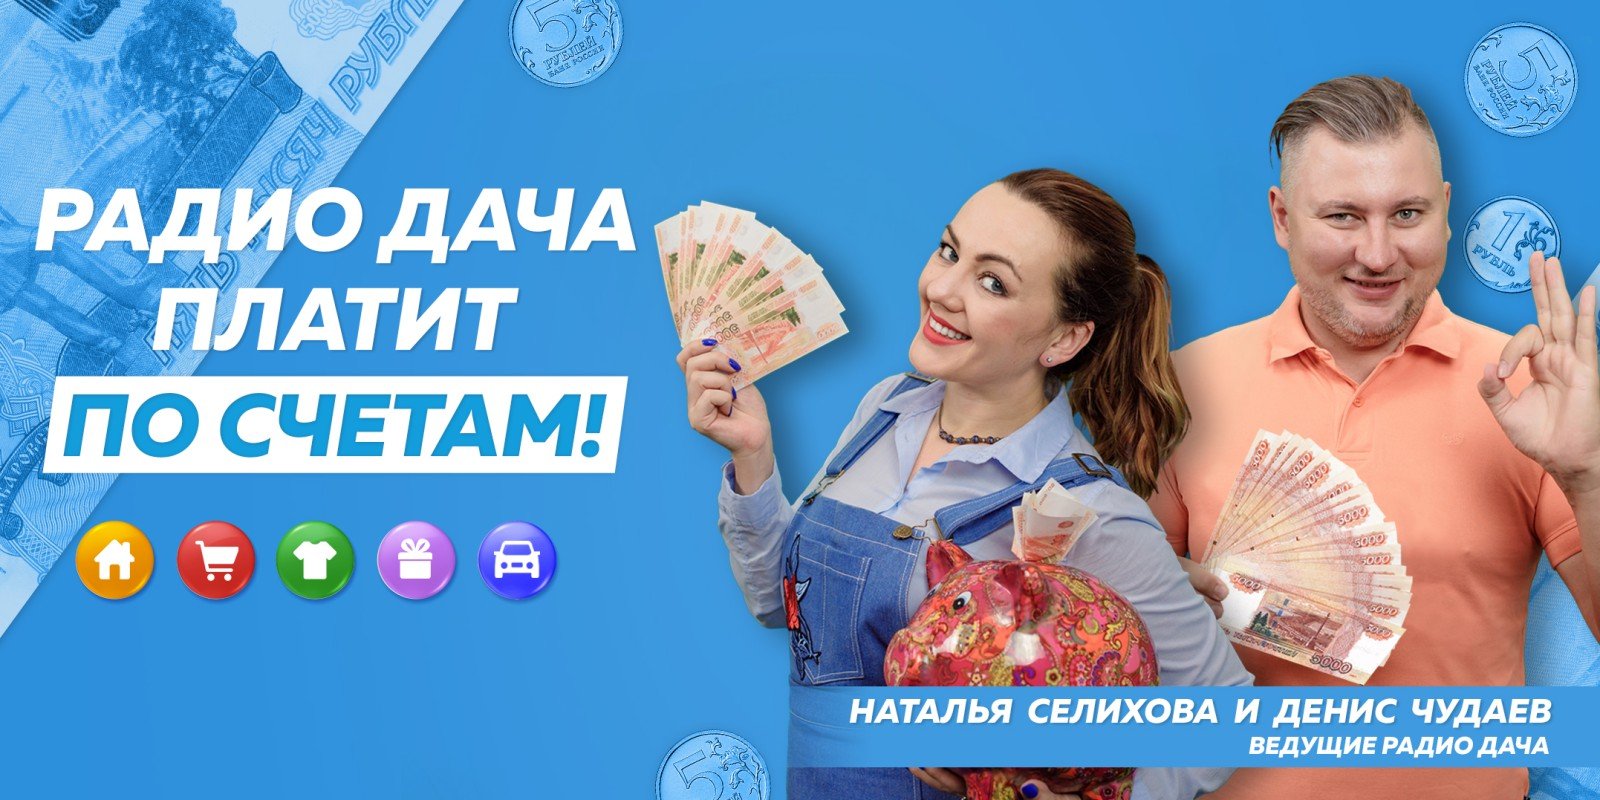 Более полумиллиона рублей получили слушатели «Радио Дача». Акция «Радио Дача платит по счетам» продолжается!